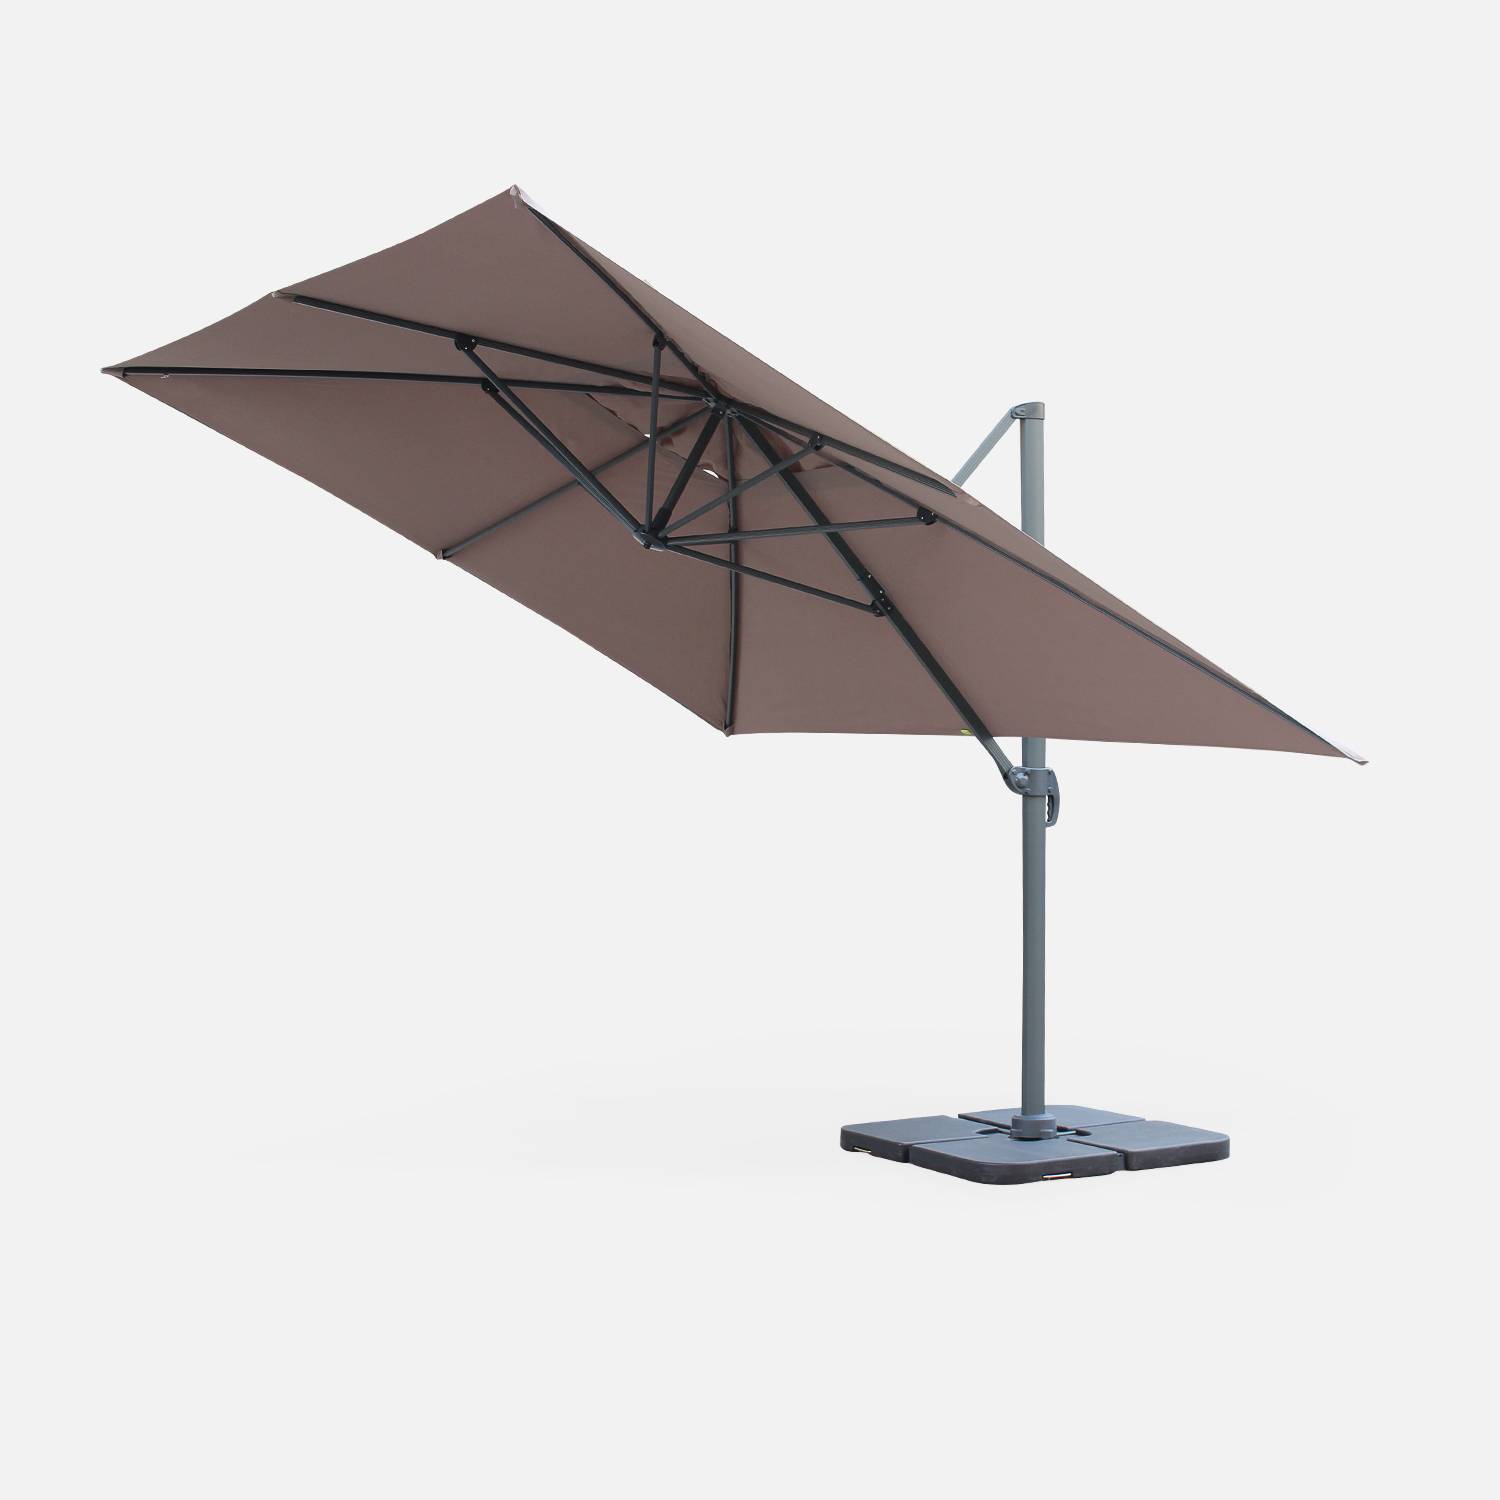 Rectangular cantilever parasol, 3x4m - Saint Jean de Luz - Beige-brown Photo4